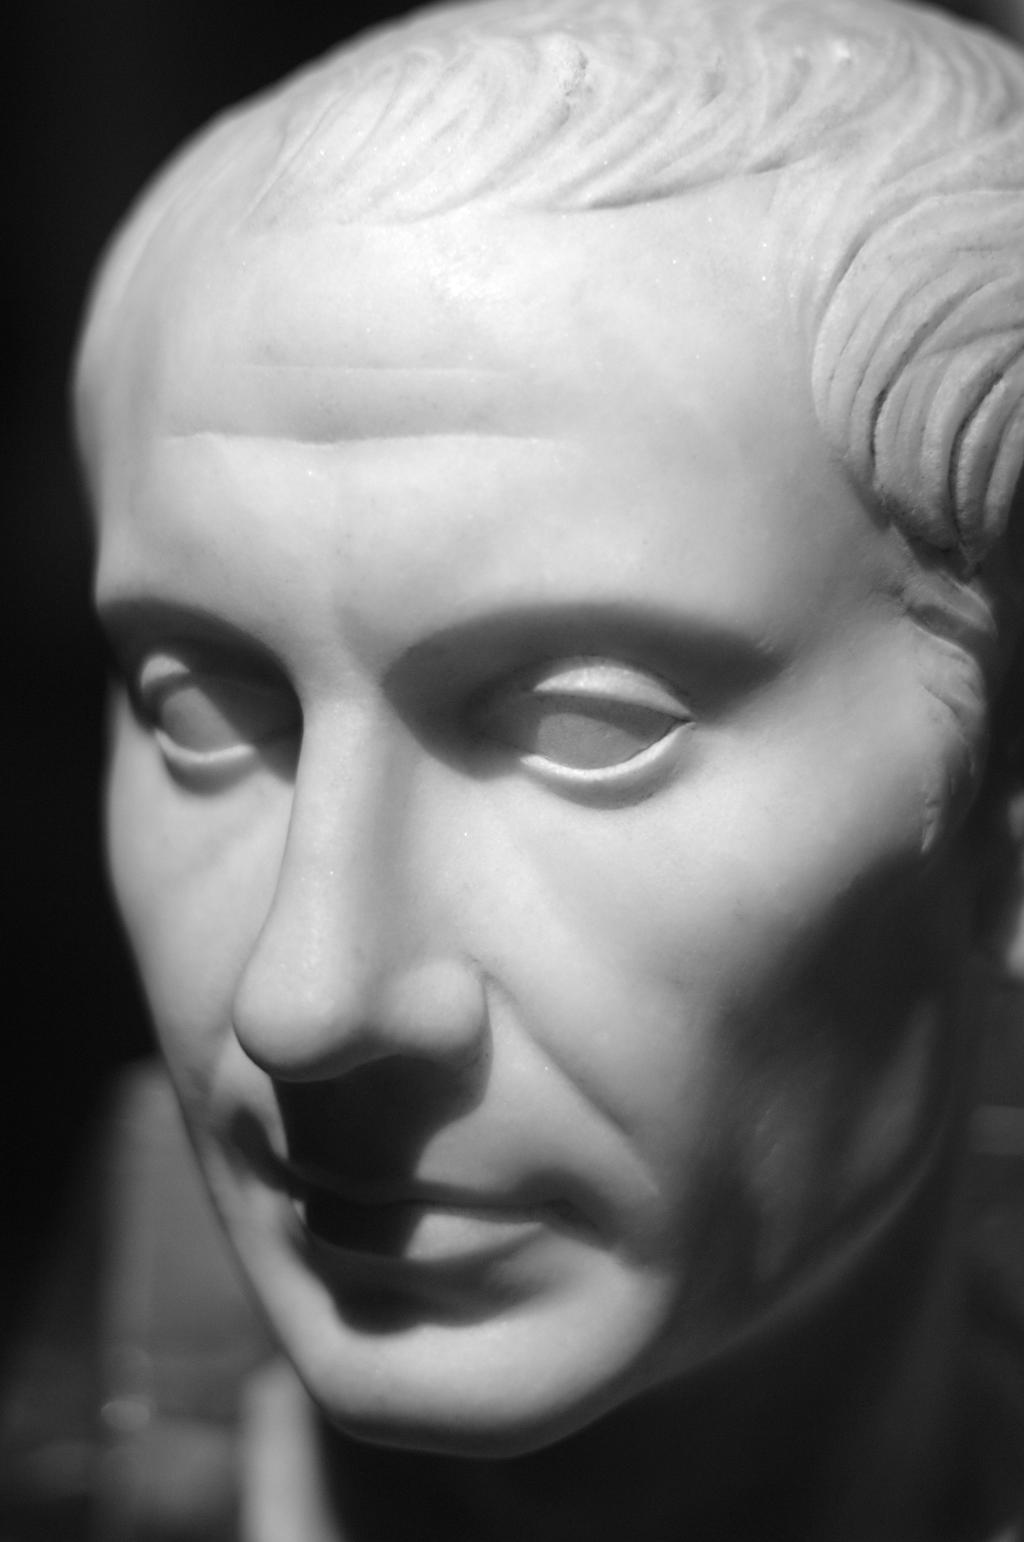 William Shakespeare s The Tragedy of Julius Caesar http://upload.